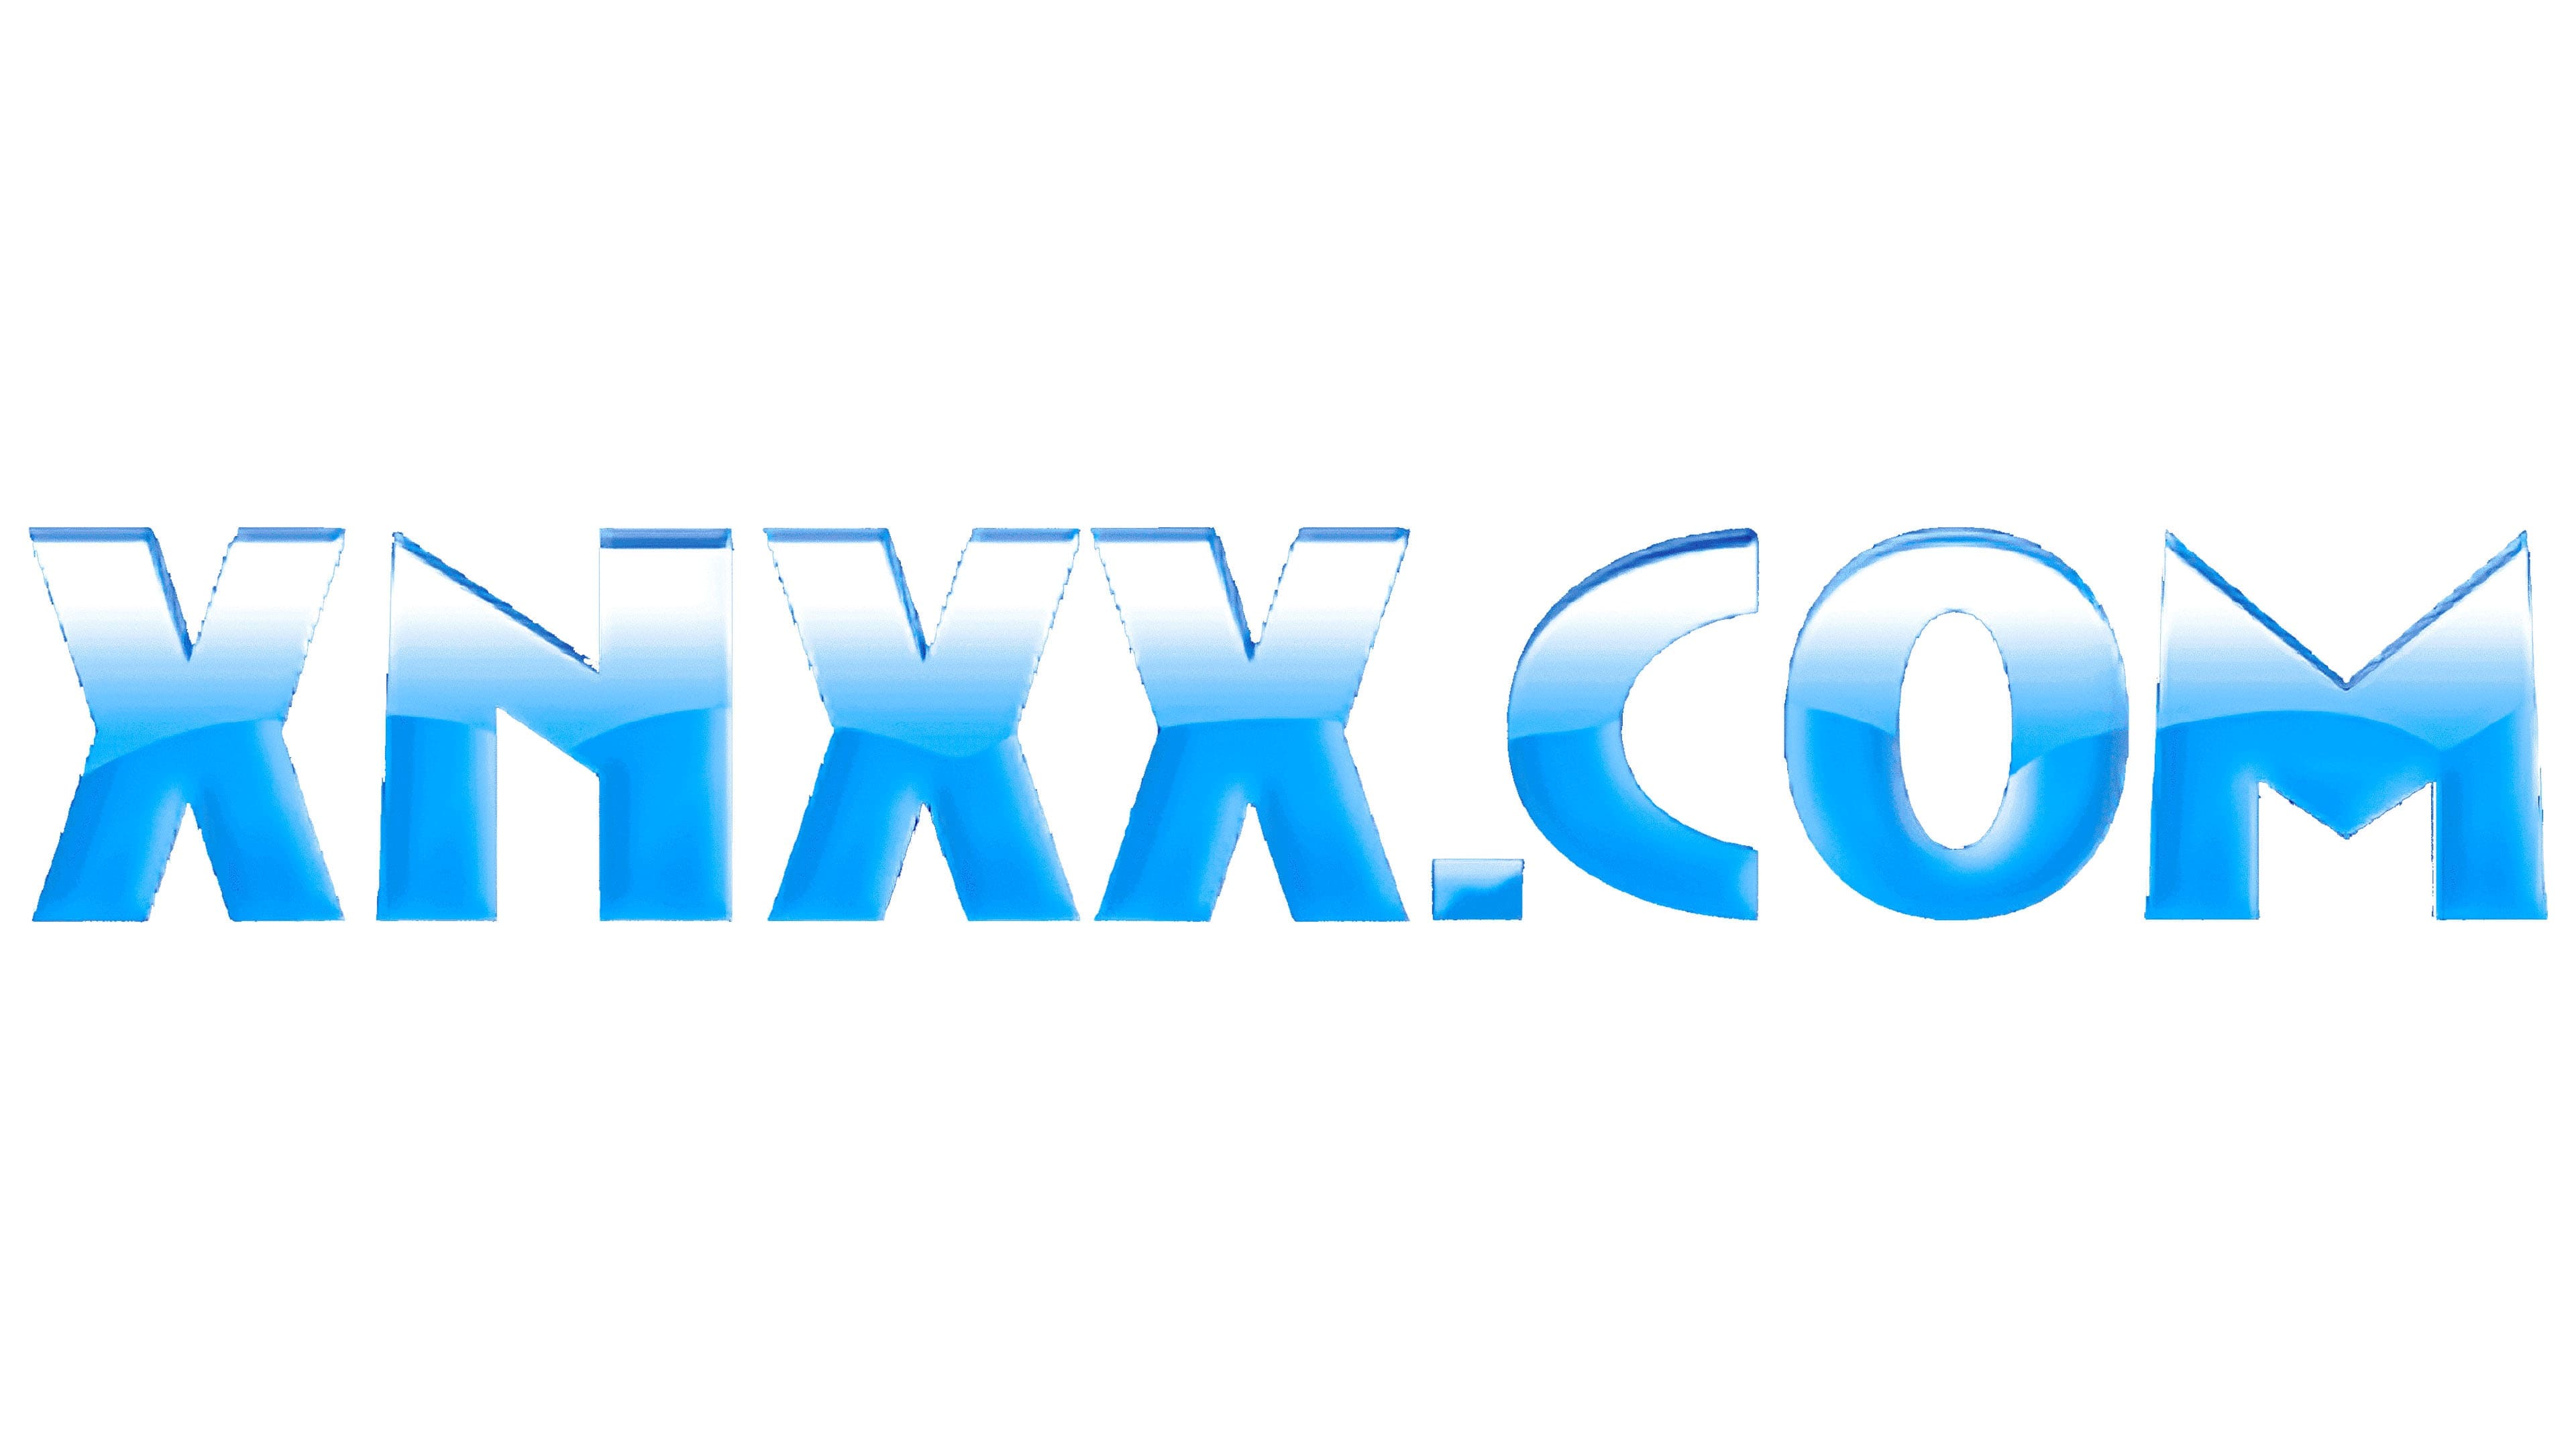 Xmxnxx - XNXX Logo, symbol, meaning, history, PNG, brand